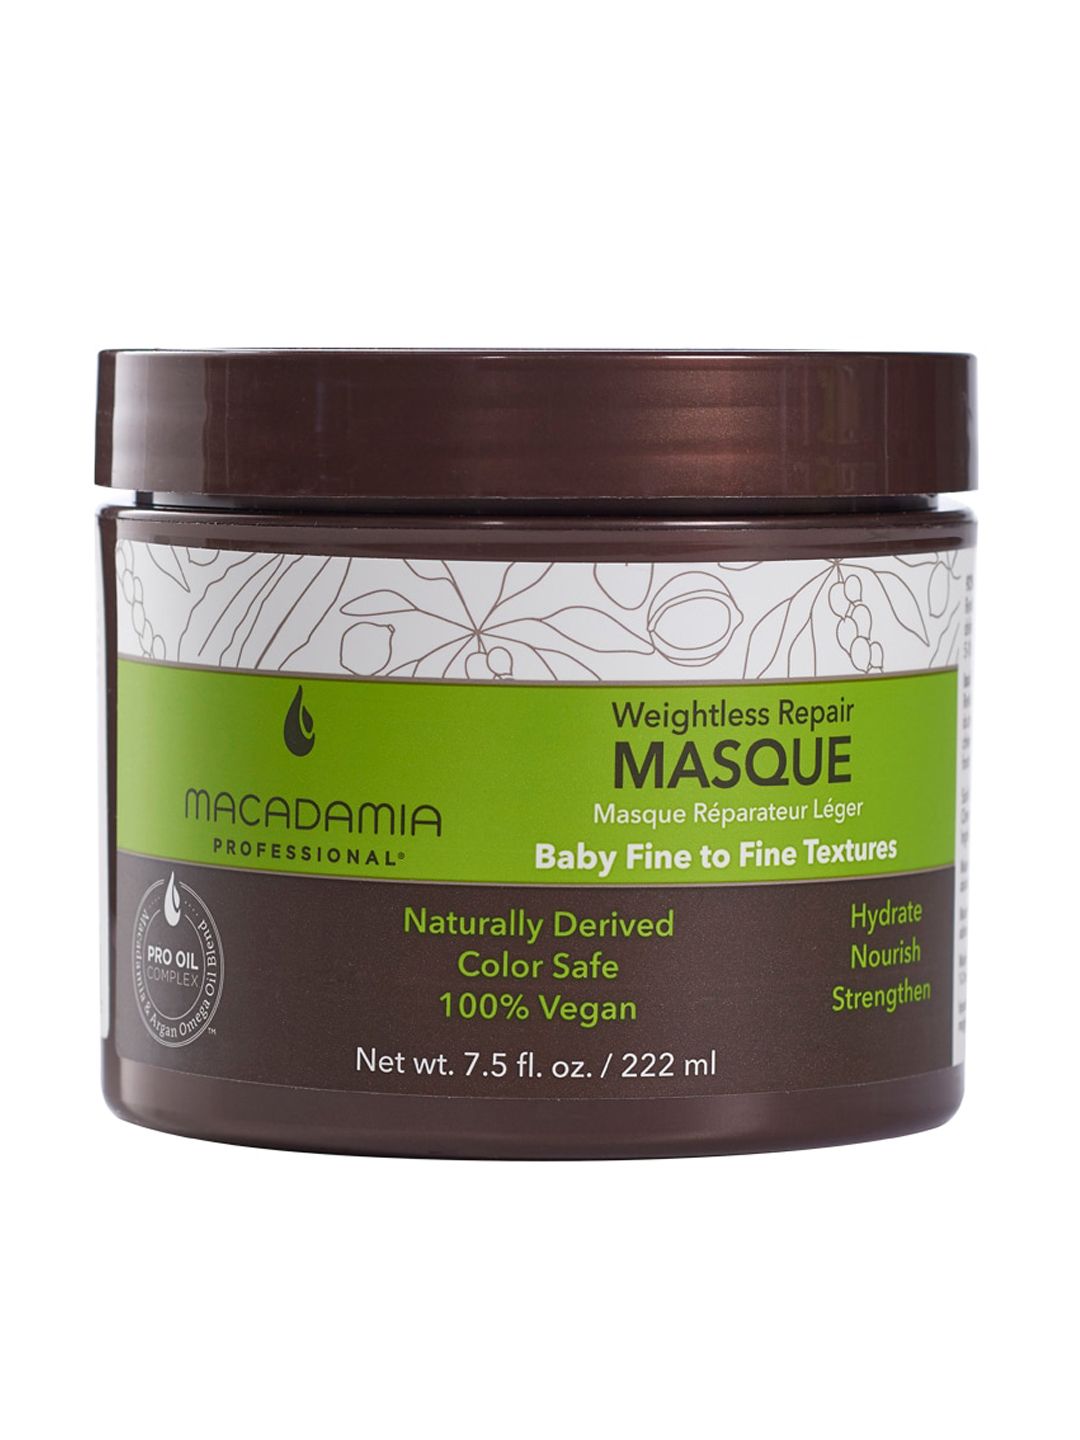 Macadamia Professional Weightless Repair Masque - 222ml Price in India